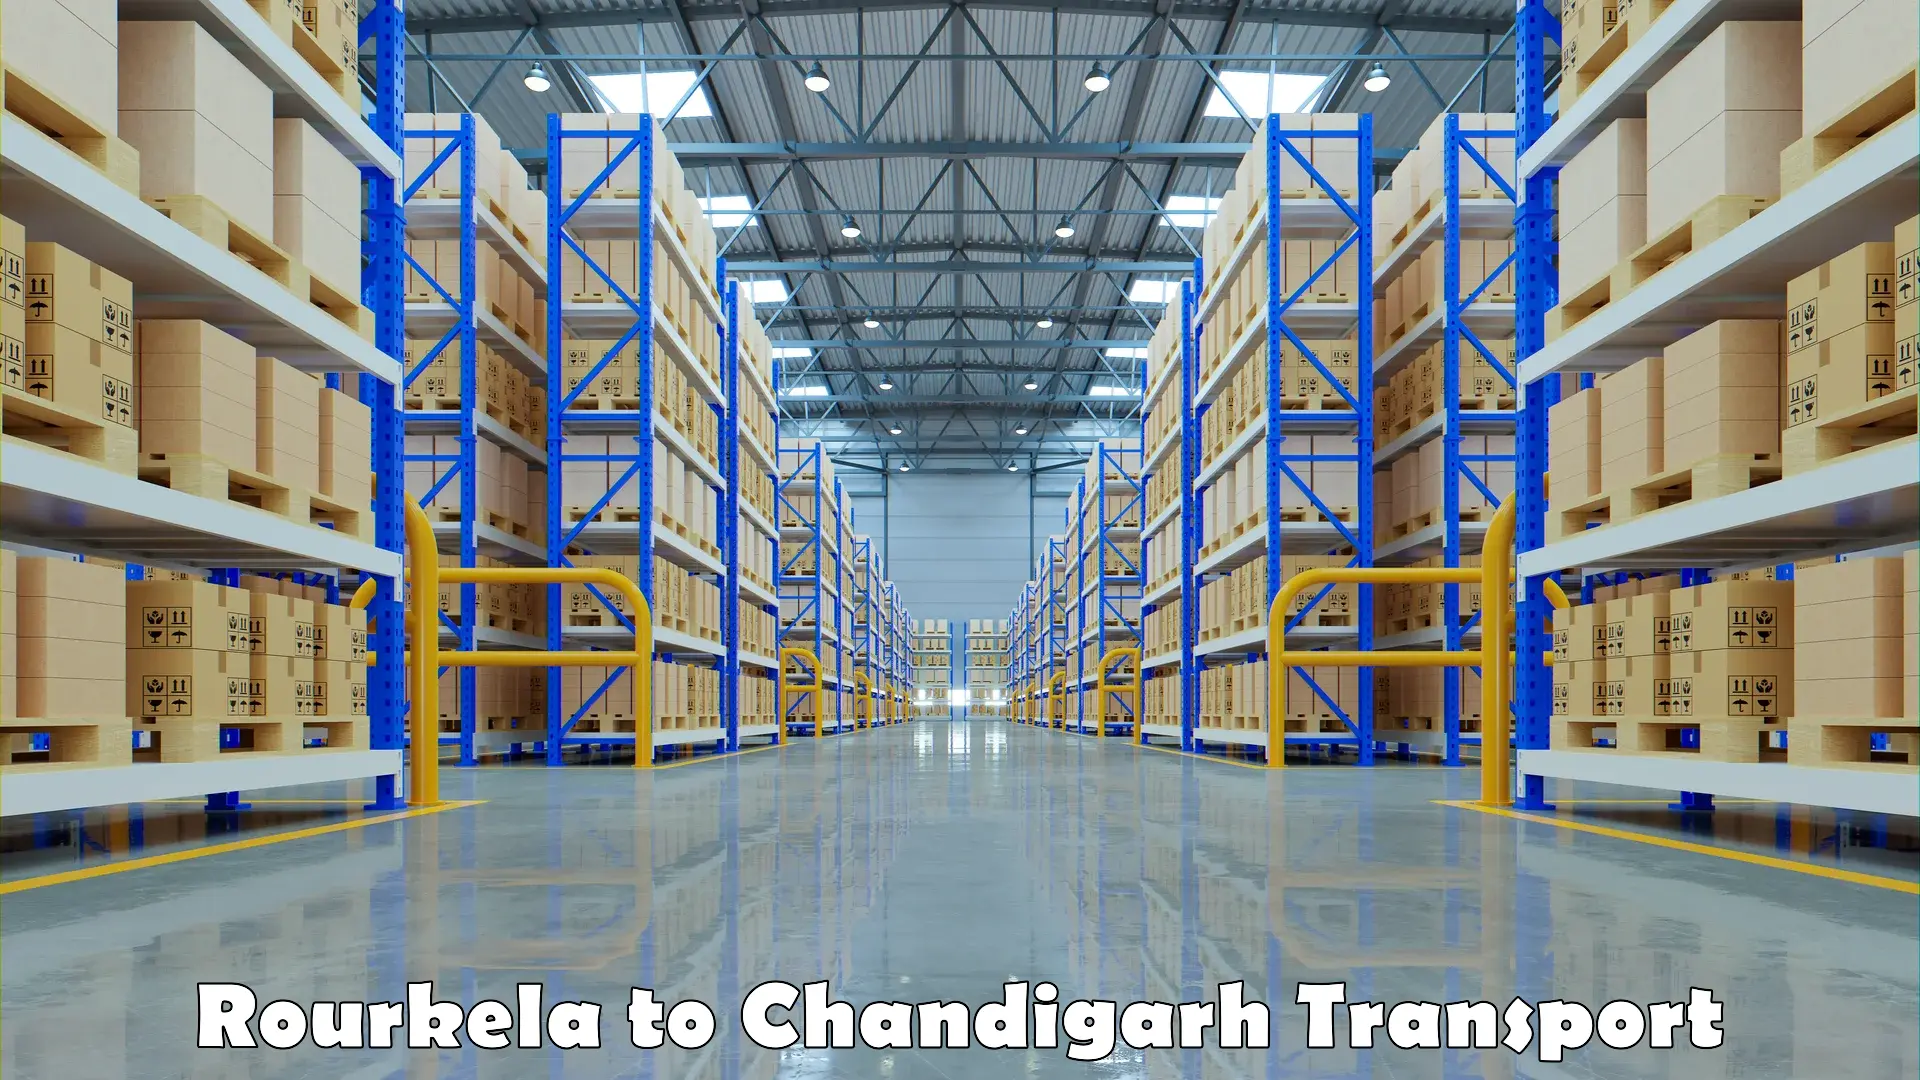 Pick up transport service Rourkela to Chandigarh